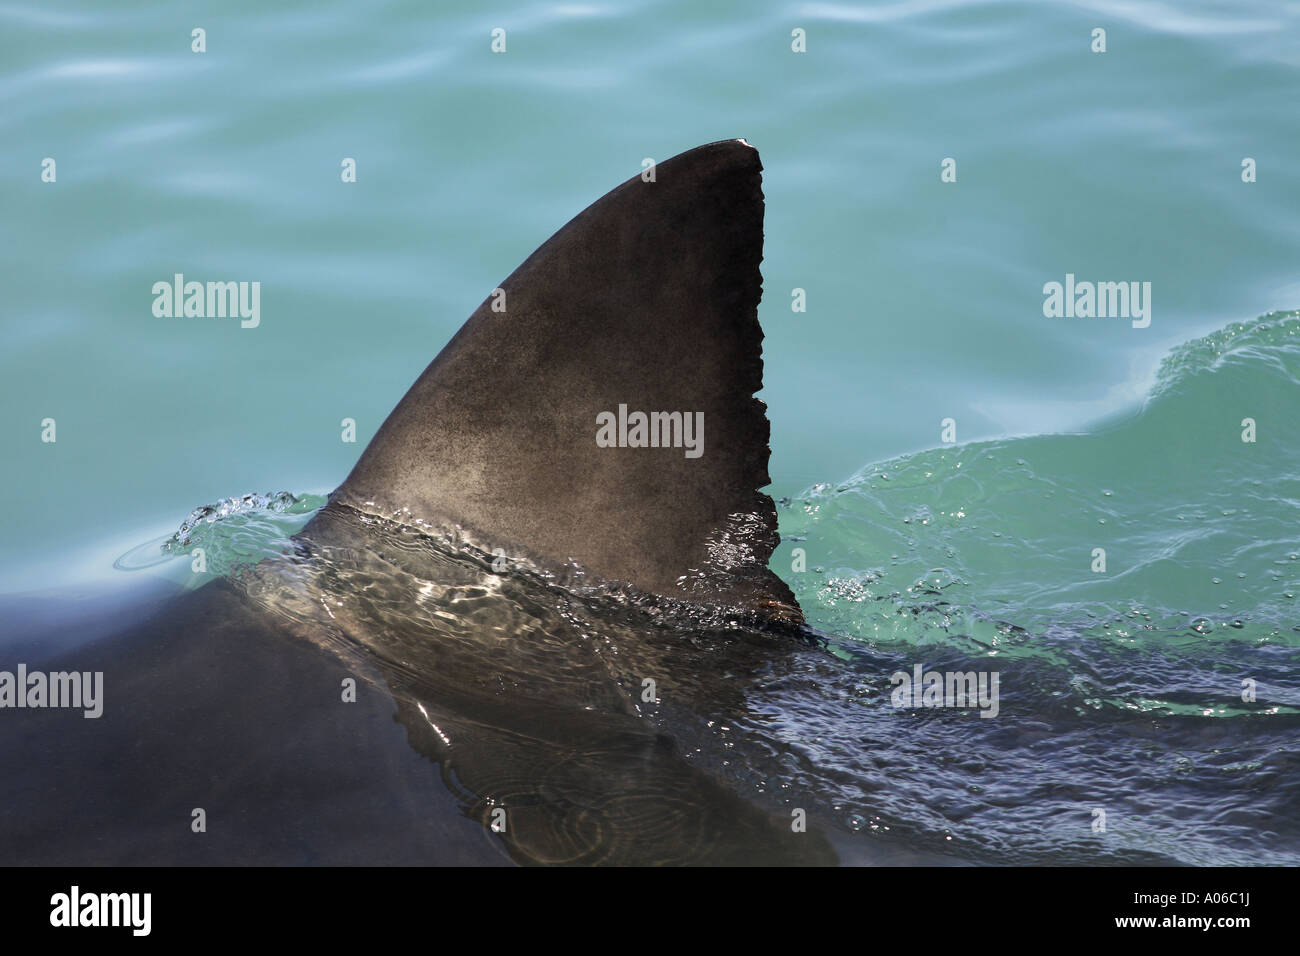 shark dorsal fin breaking surface Stock Photo